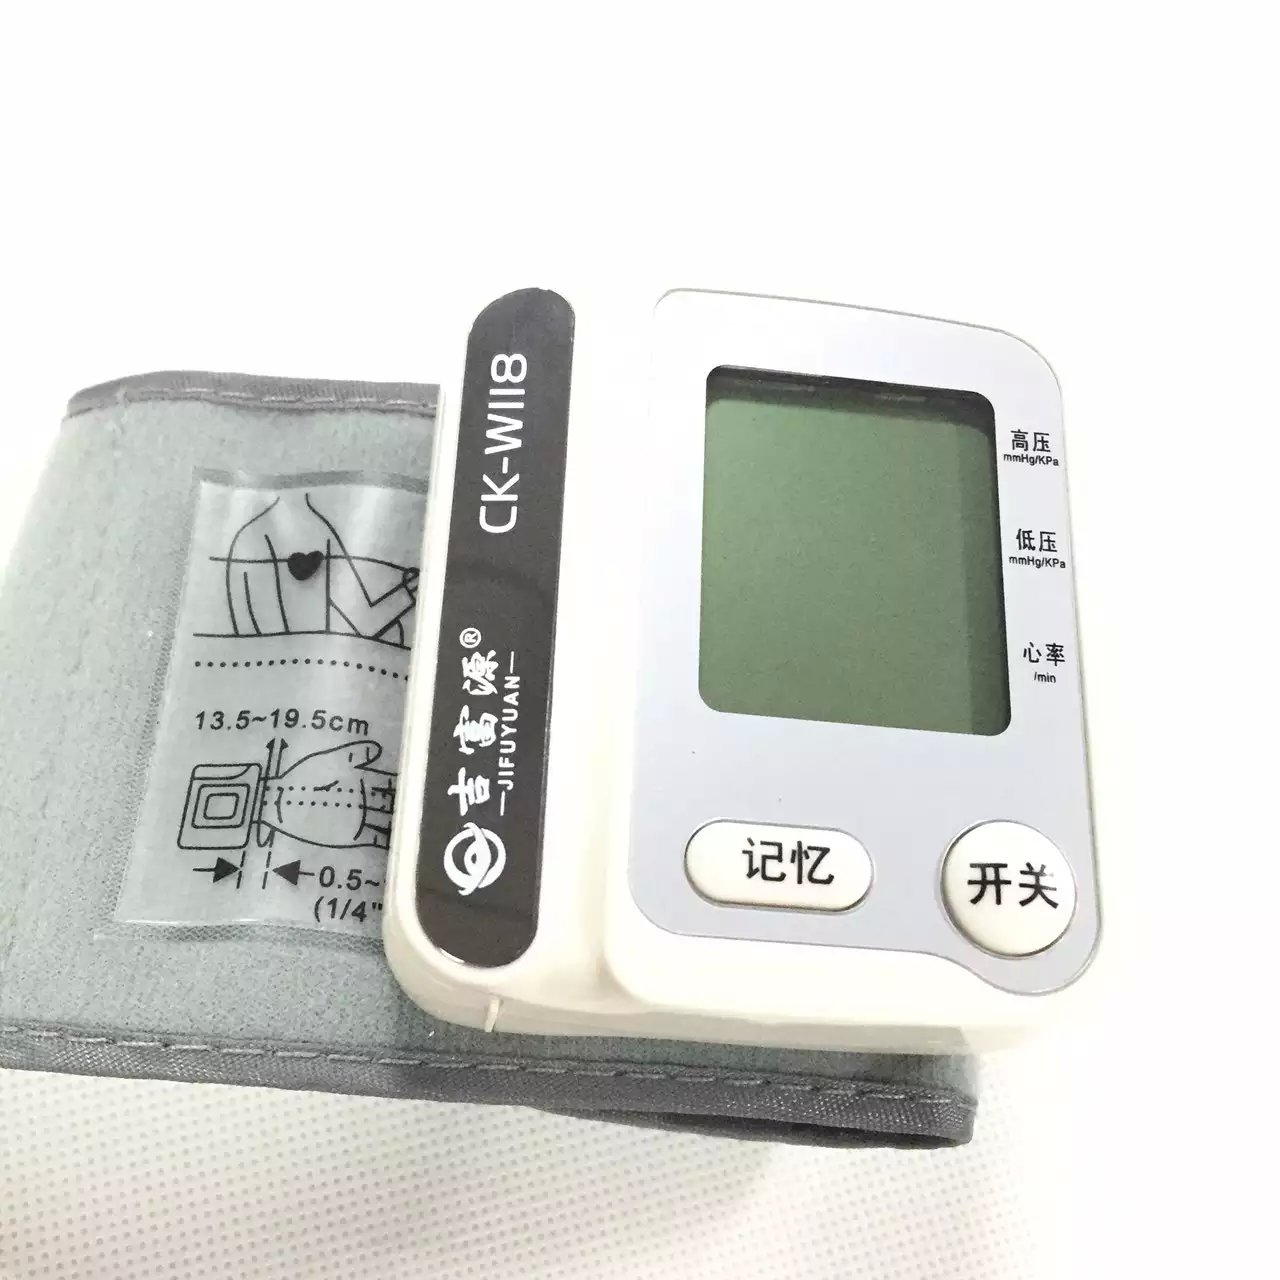 供应精准电子血压计2016新款血压计新款热销全自动智能电子血压计|长坤语音电子血压计|臂式血压计图片